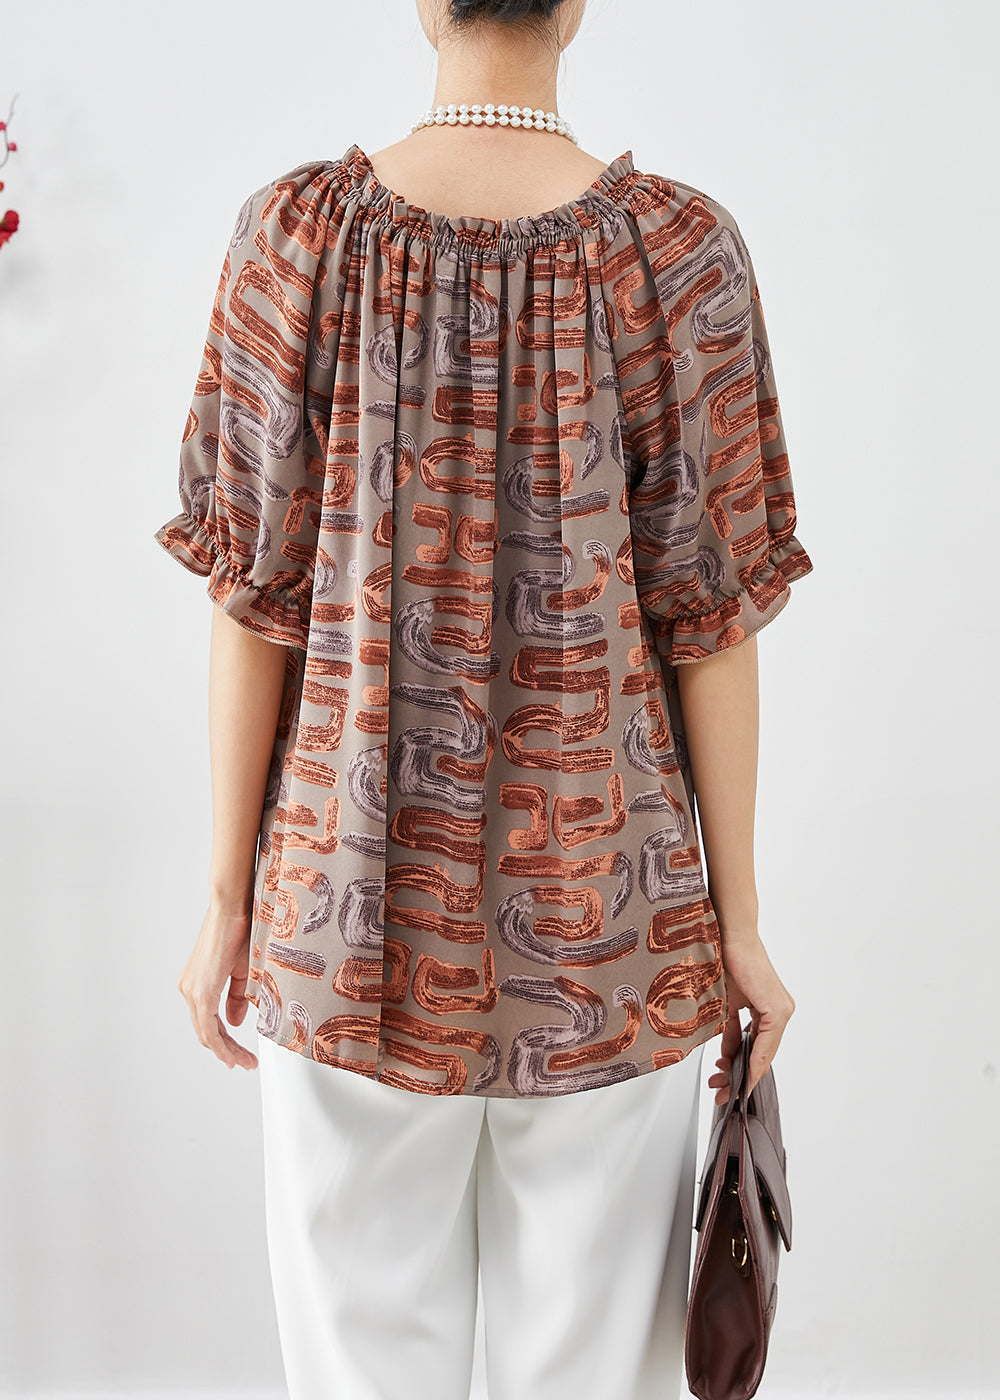 Beautiful Khaki Oversized Print Chiffon Blouse Tops Summer